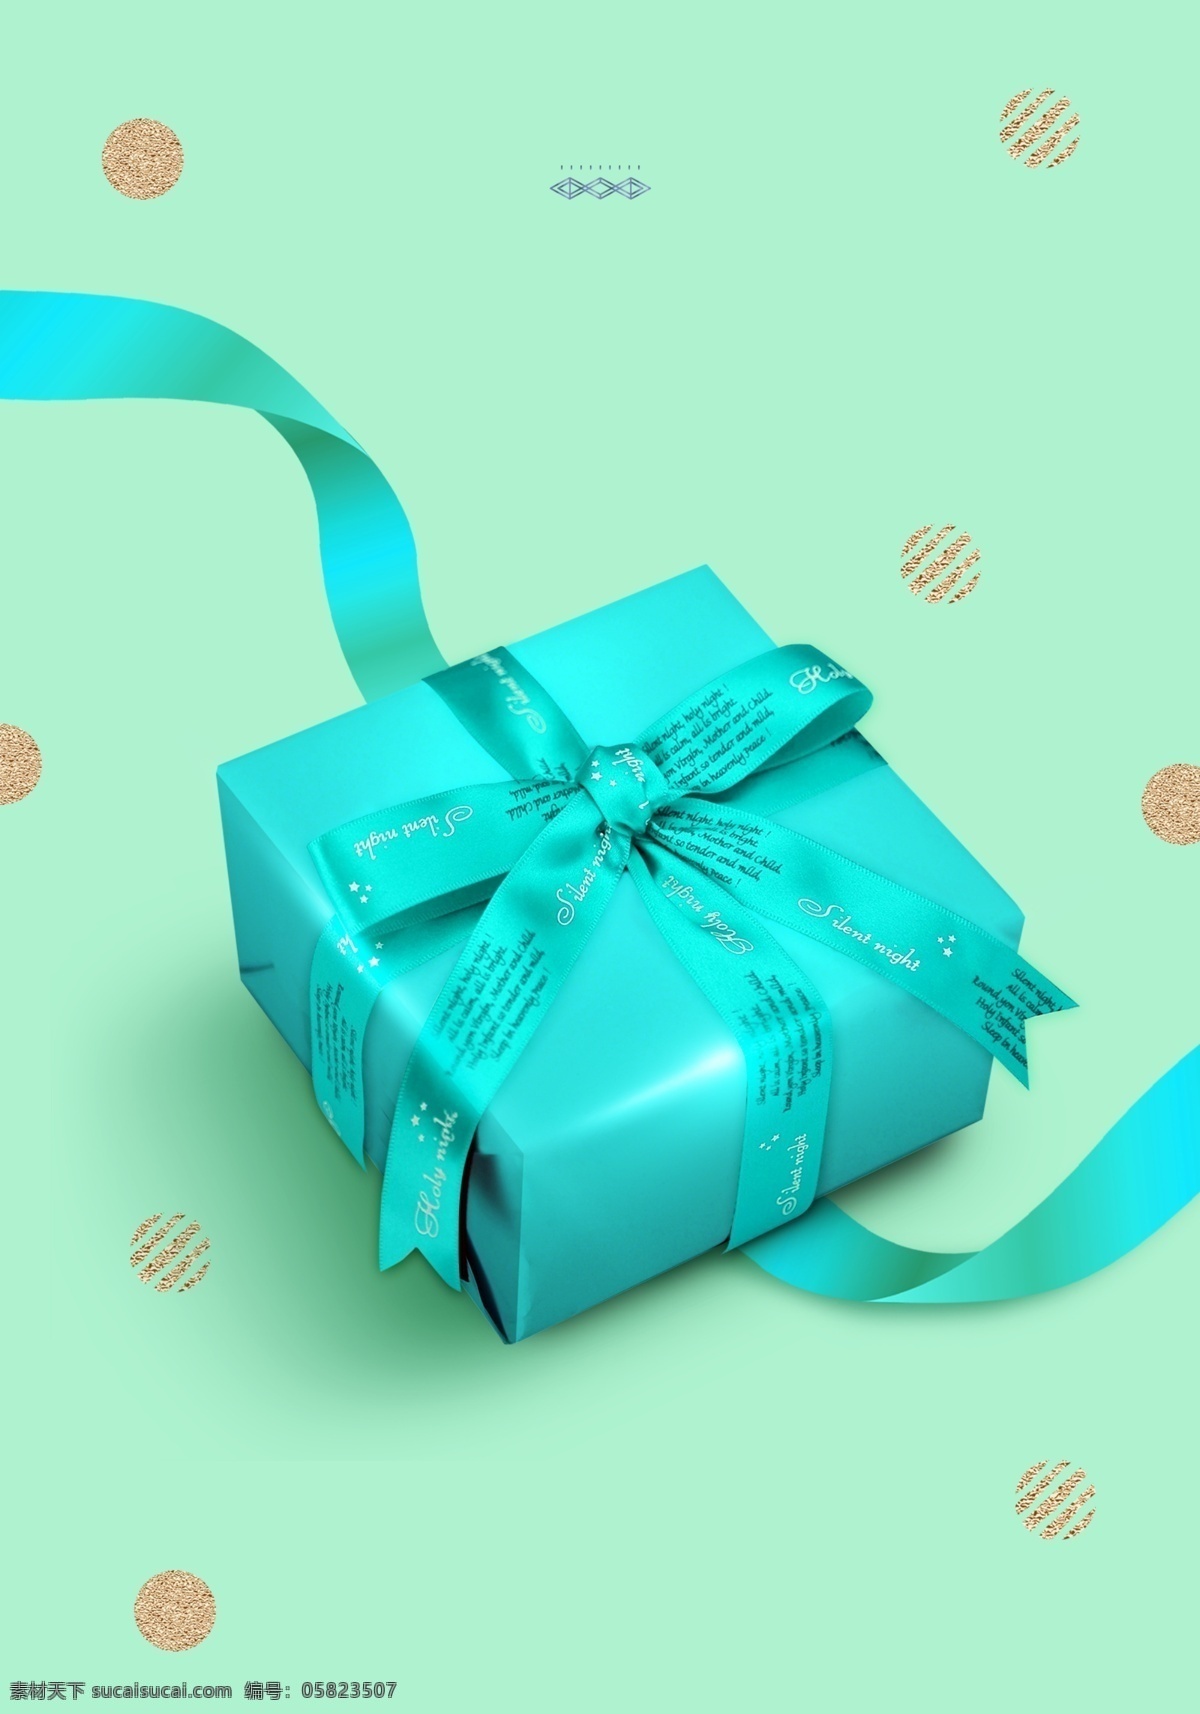 时尚 蓝色 礼盒 背景 礼盒背景素材 礼物 礼盒设计 礼品盒 包装礼盒 包装展架 礼盒背景图 新年礼盒背景 礼盒展板